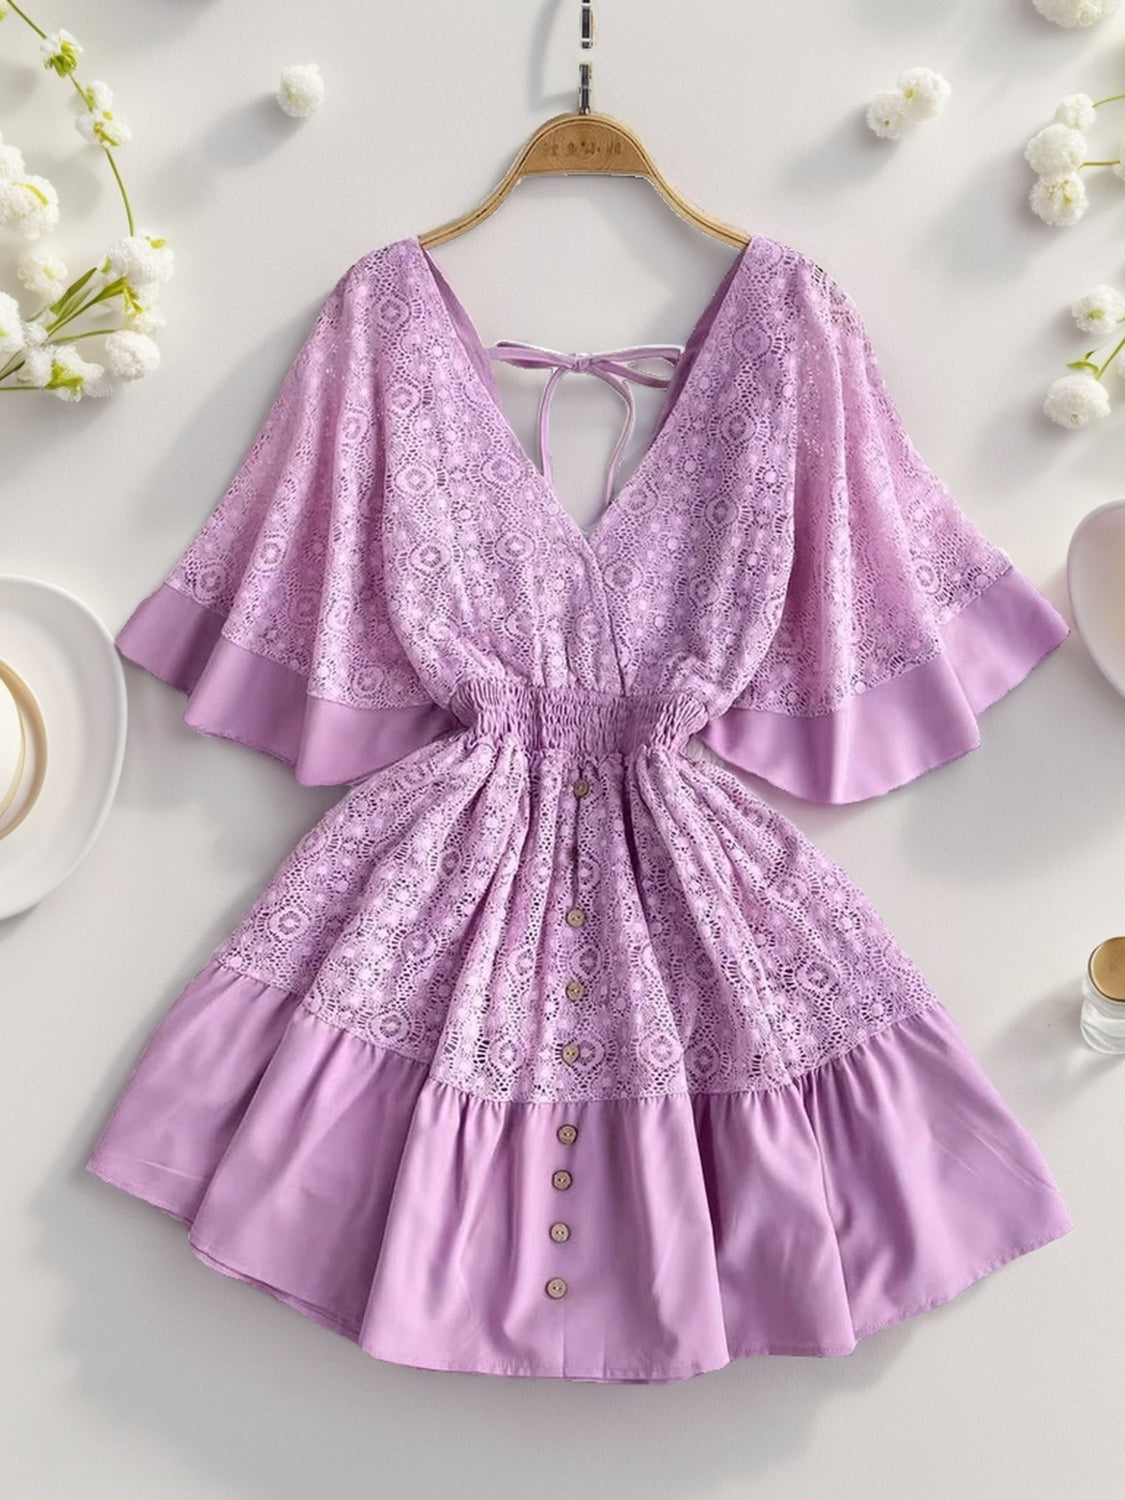 TEEK - Lace Cutout Half Sleeve Mini Dress DRESS TEEK Trend Lavender S 